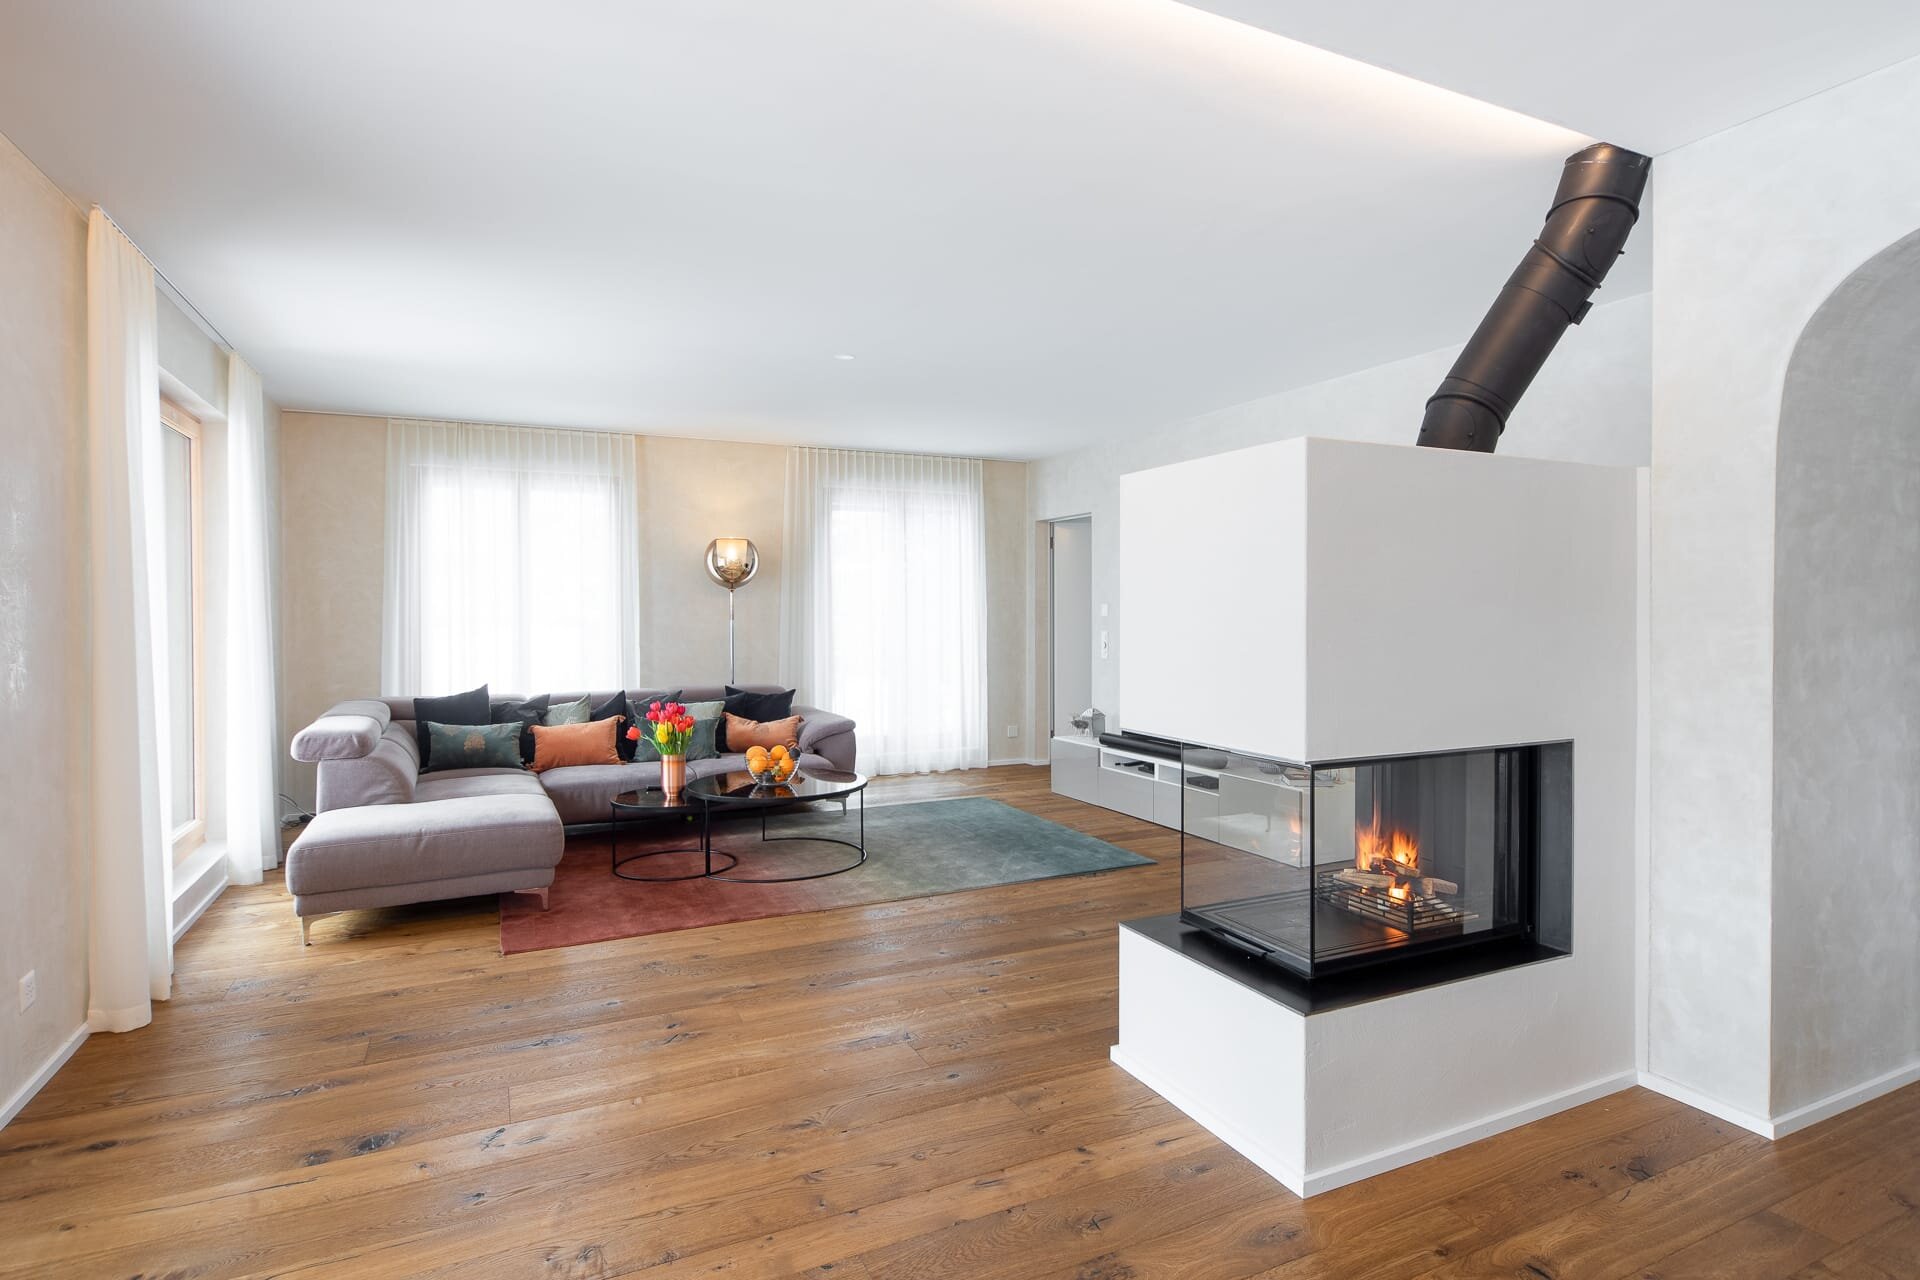 Wohnzimmer mit Feuerstelle by Vinval Gestaltung